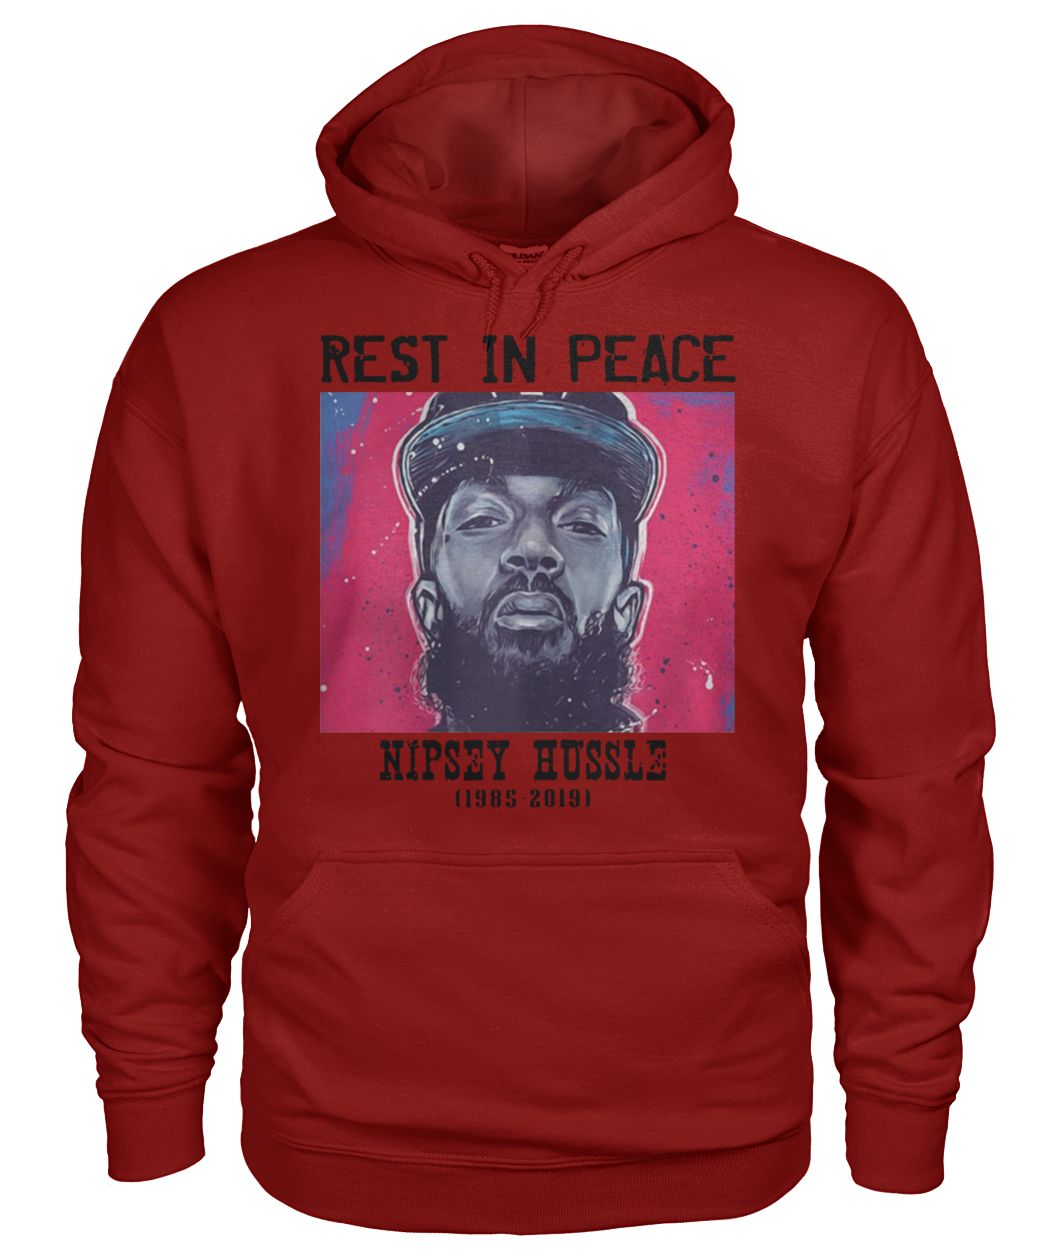 Rip Nipsey Hussle 1985 2019 gildan hoodie